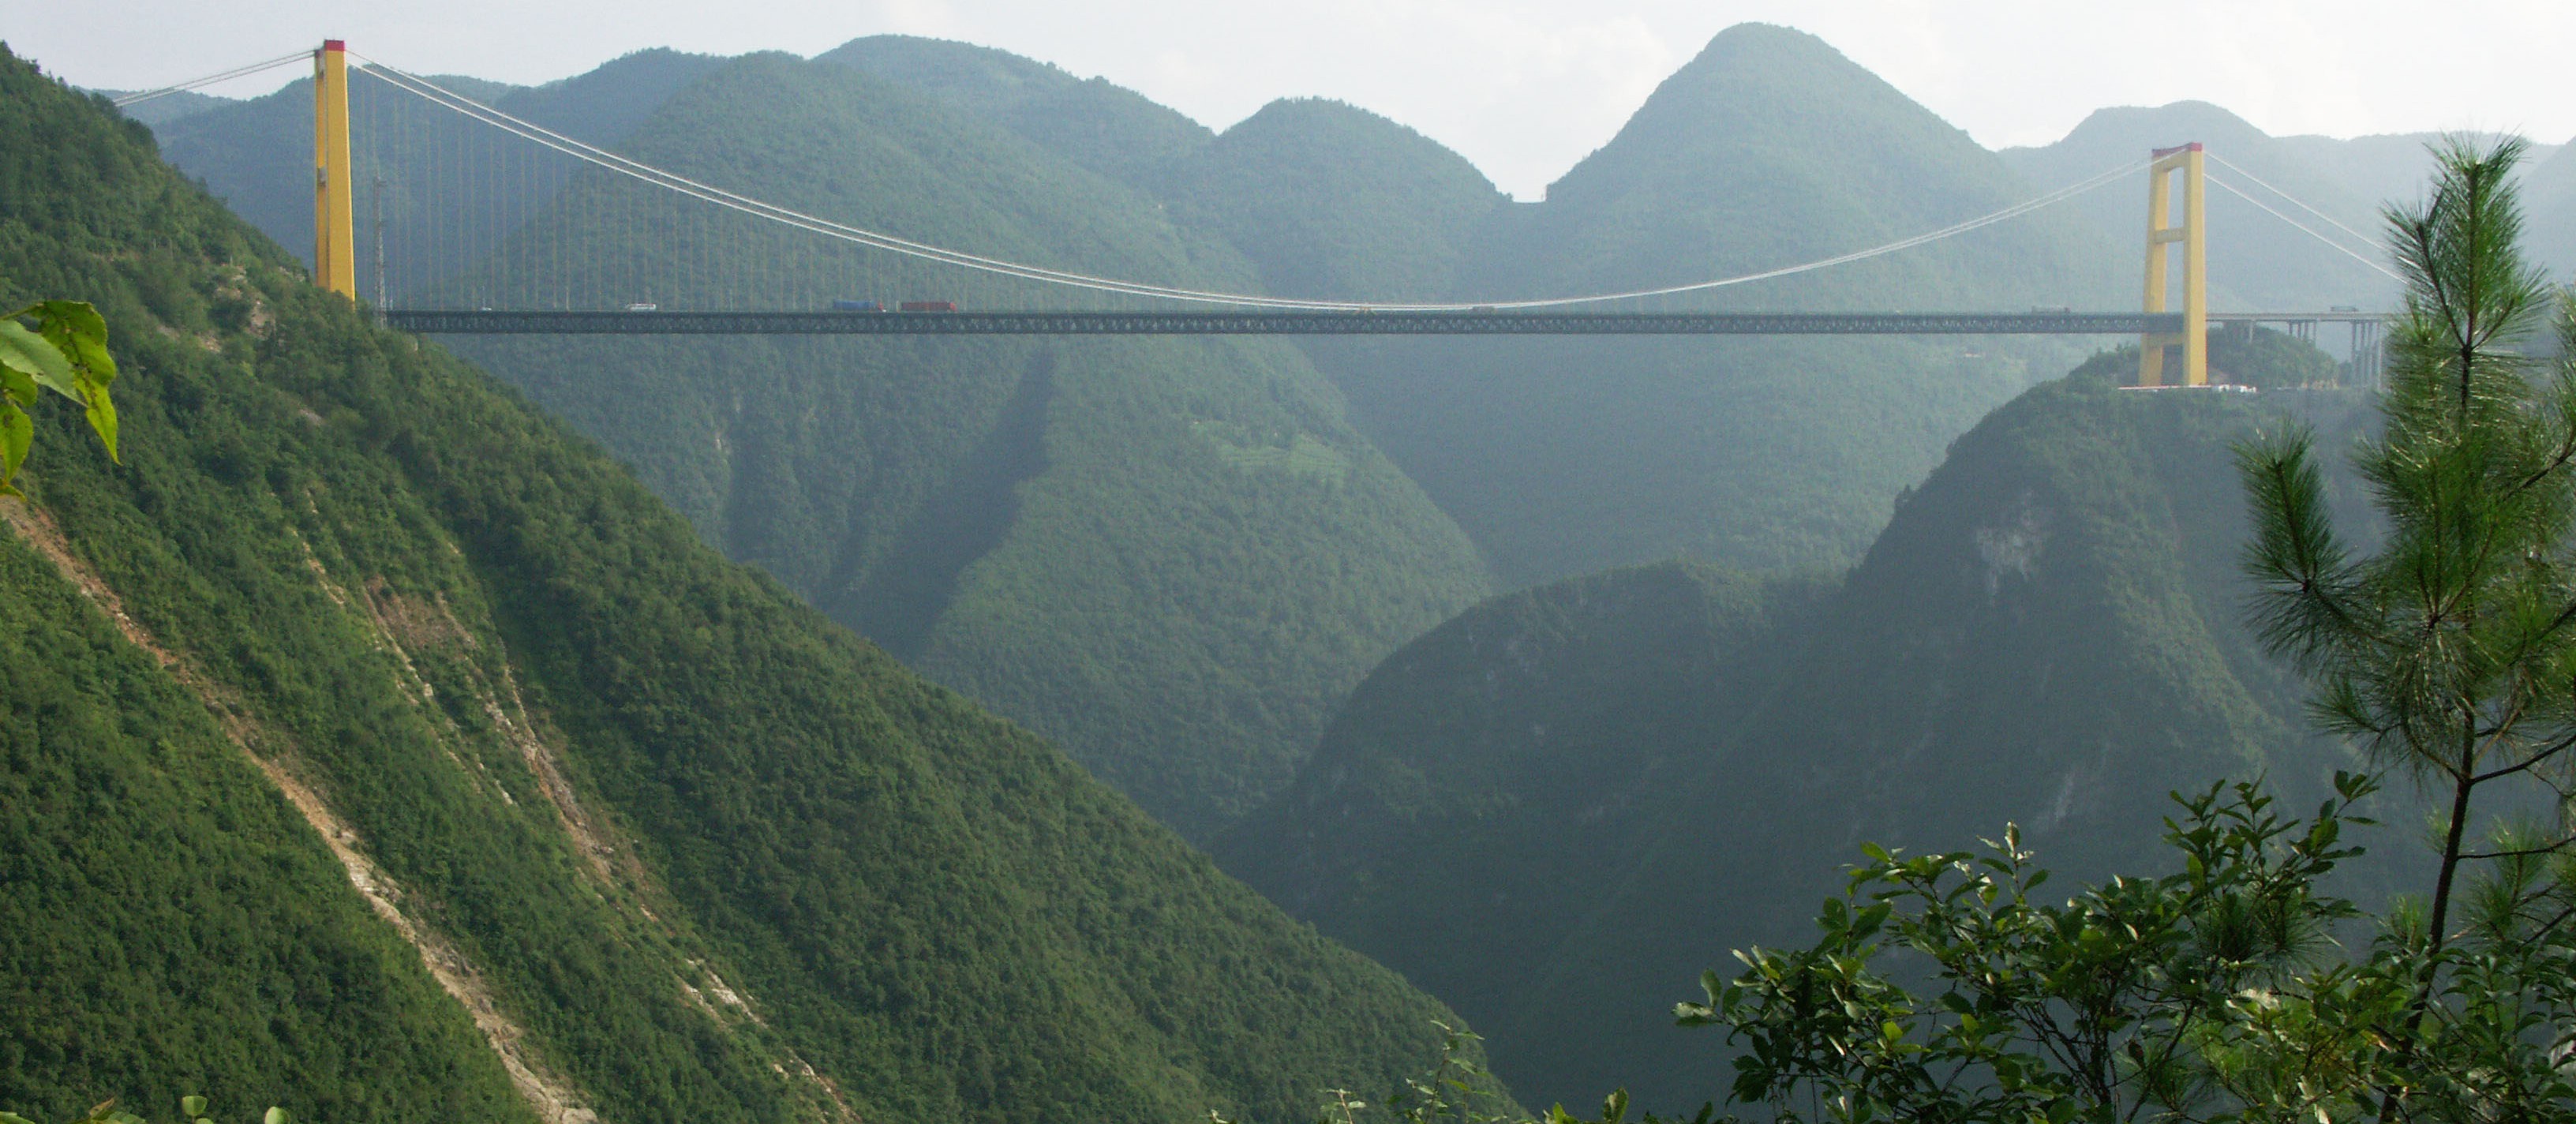 Puente del río Sidu, el puente con el vano más alto del mundo